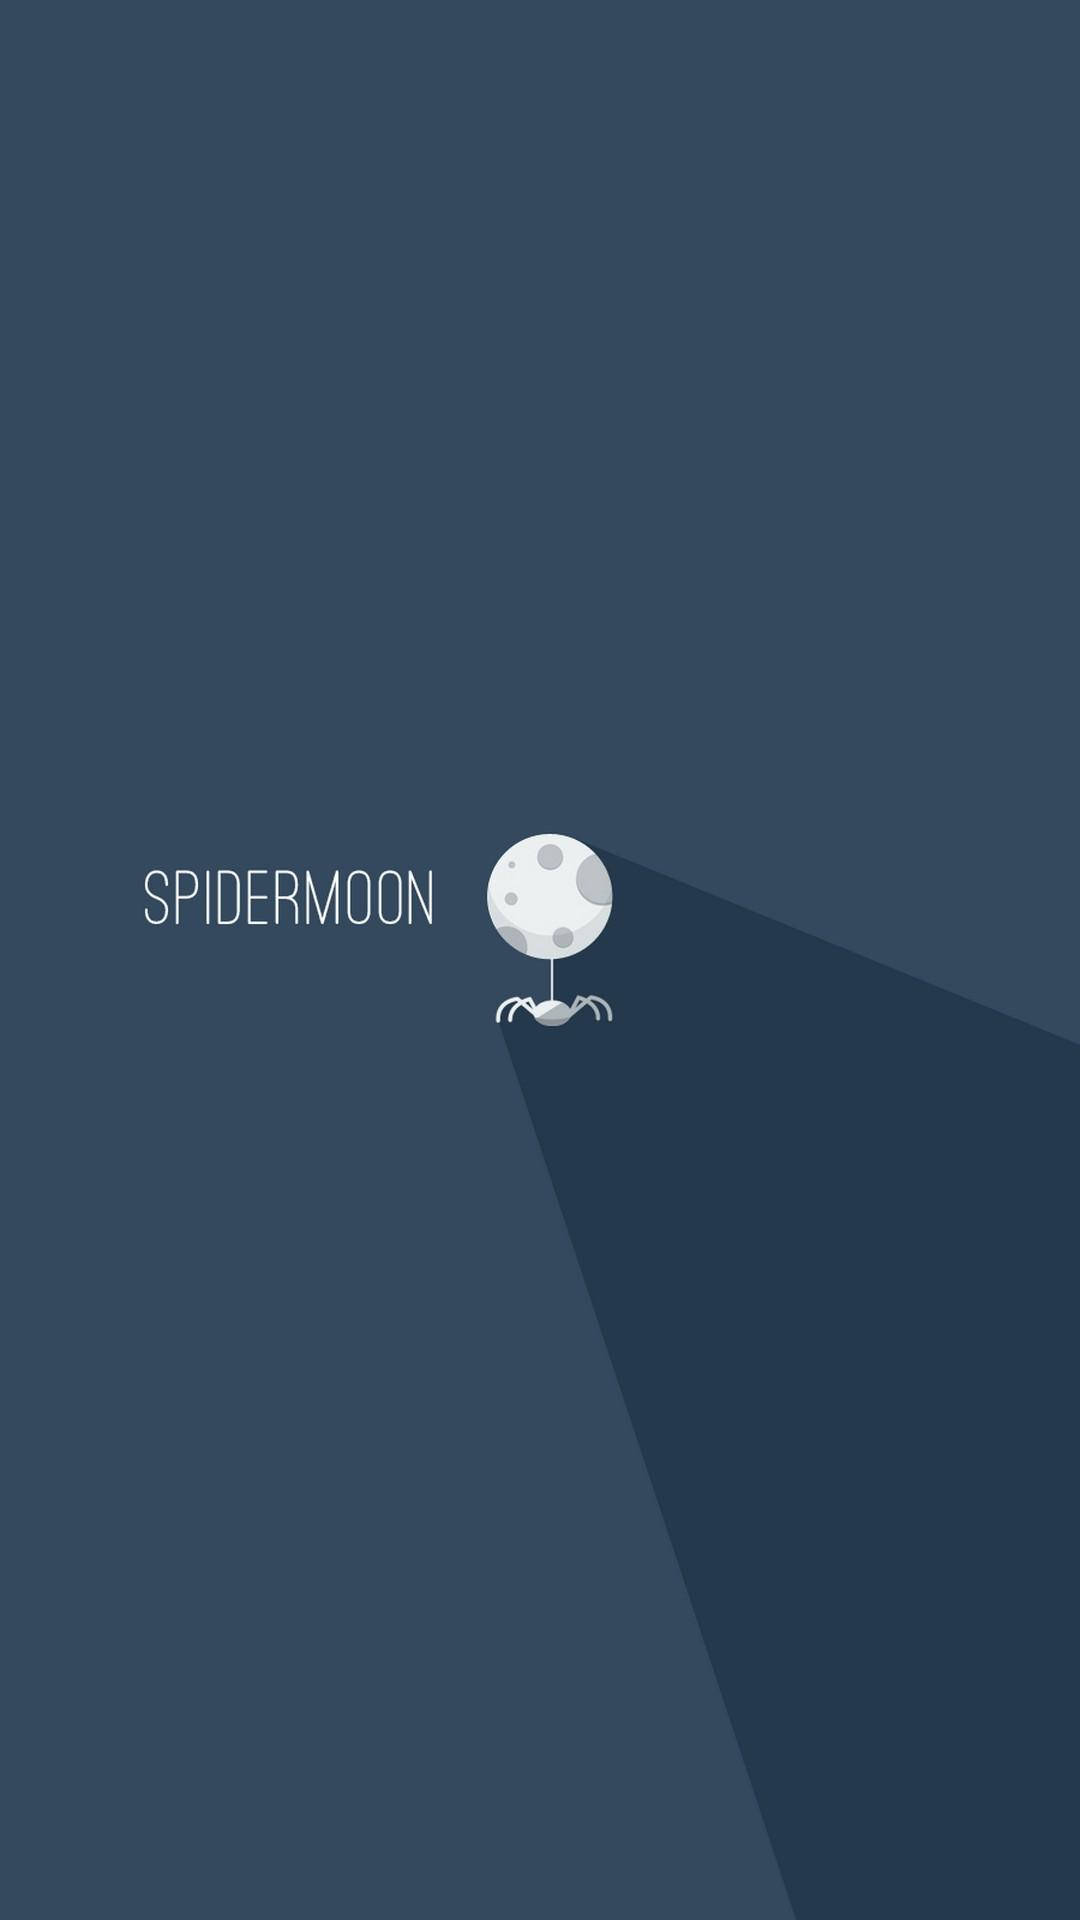 Spidermoon Minimalist Android